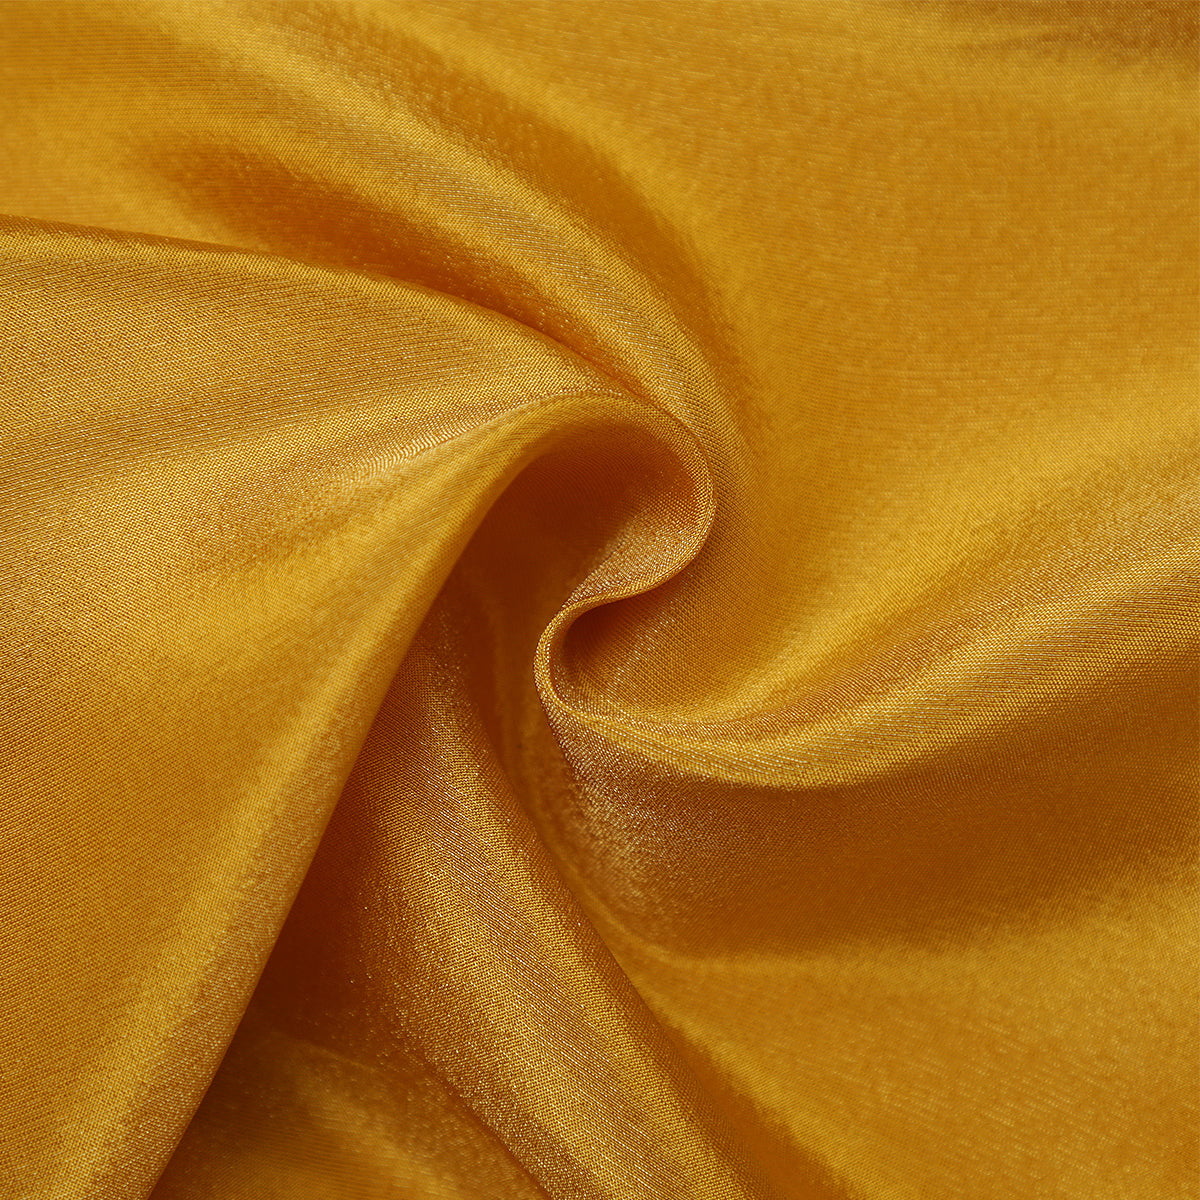 Pure Zari Tissue Grip Zari Jacquard-FGDS0001833 - Tasneem Fabrics